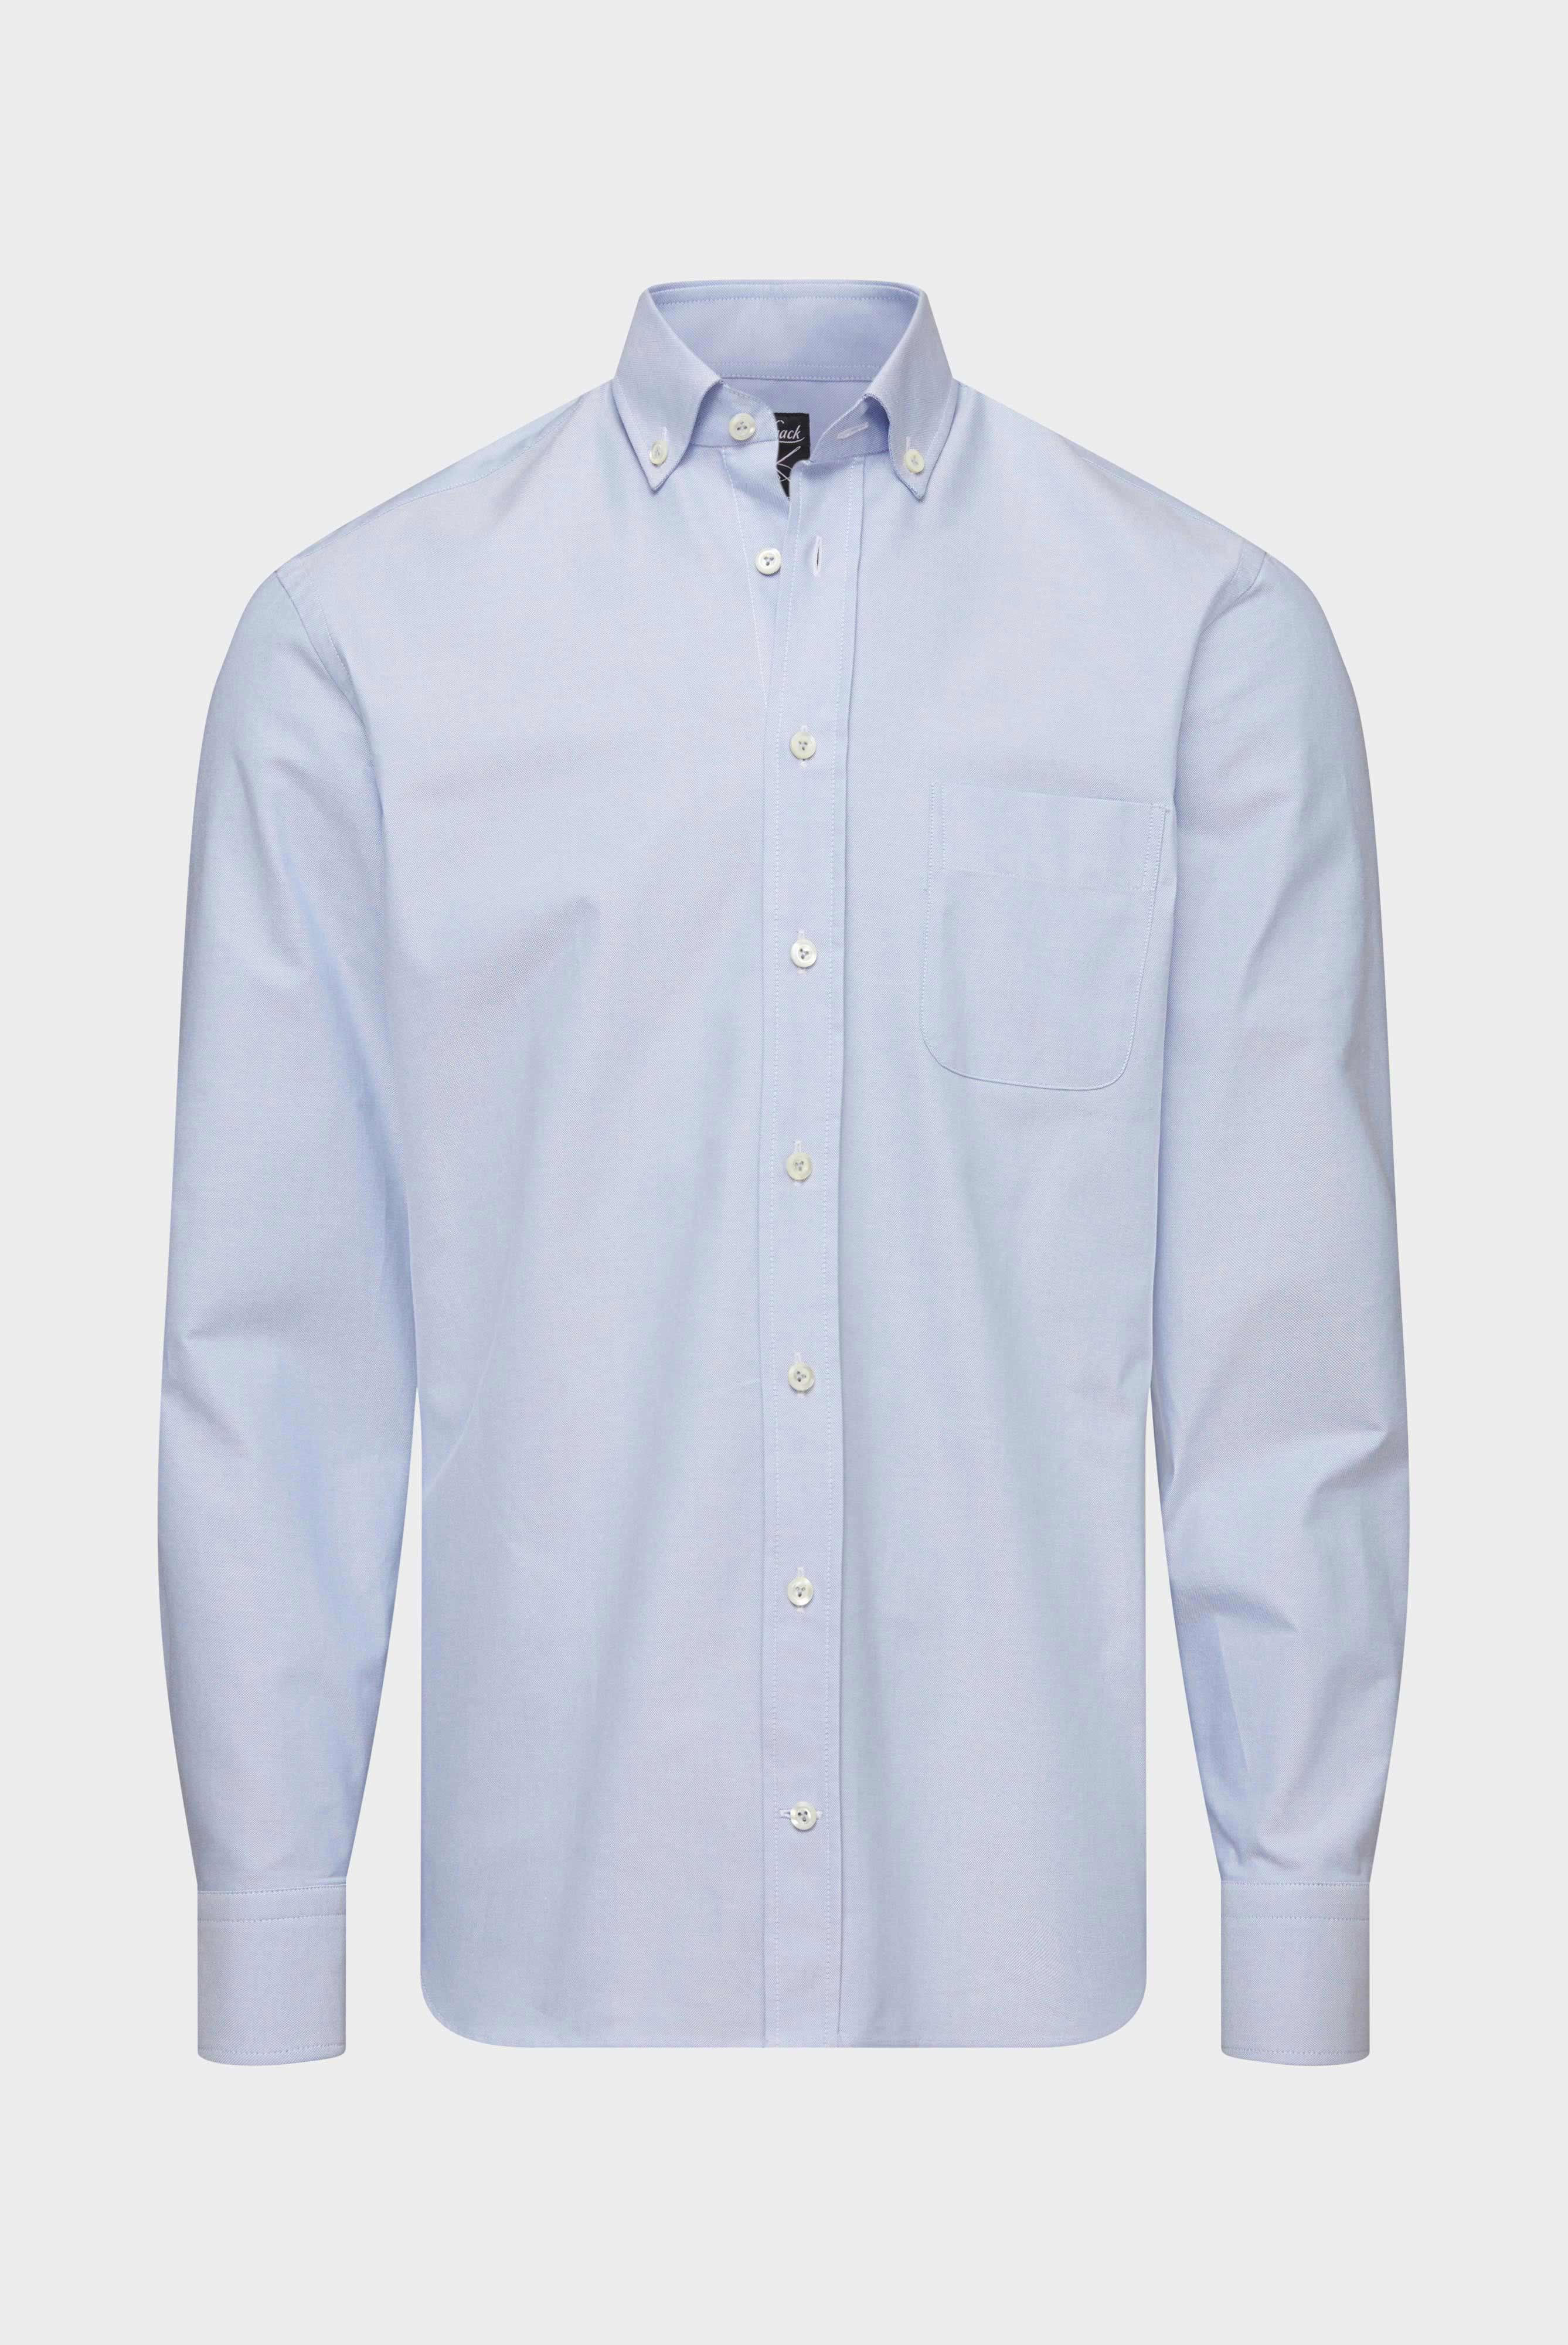 Casual Hemden+Oxfordhemd Tailor Fit+20.2013.AV.161267.730.37